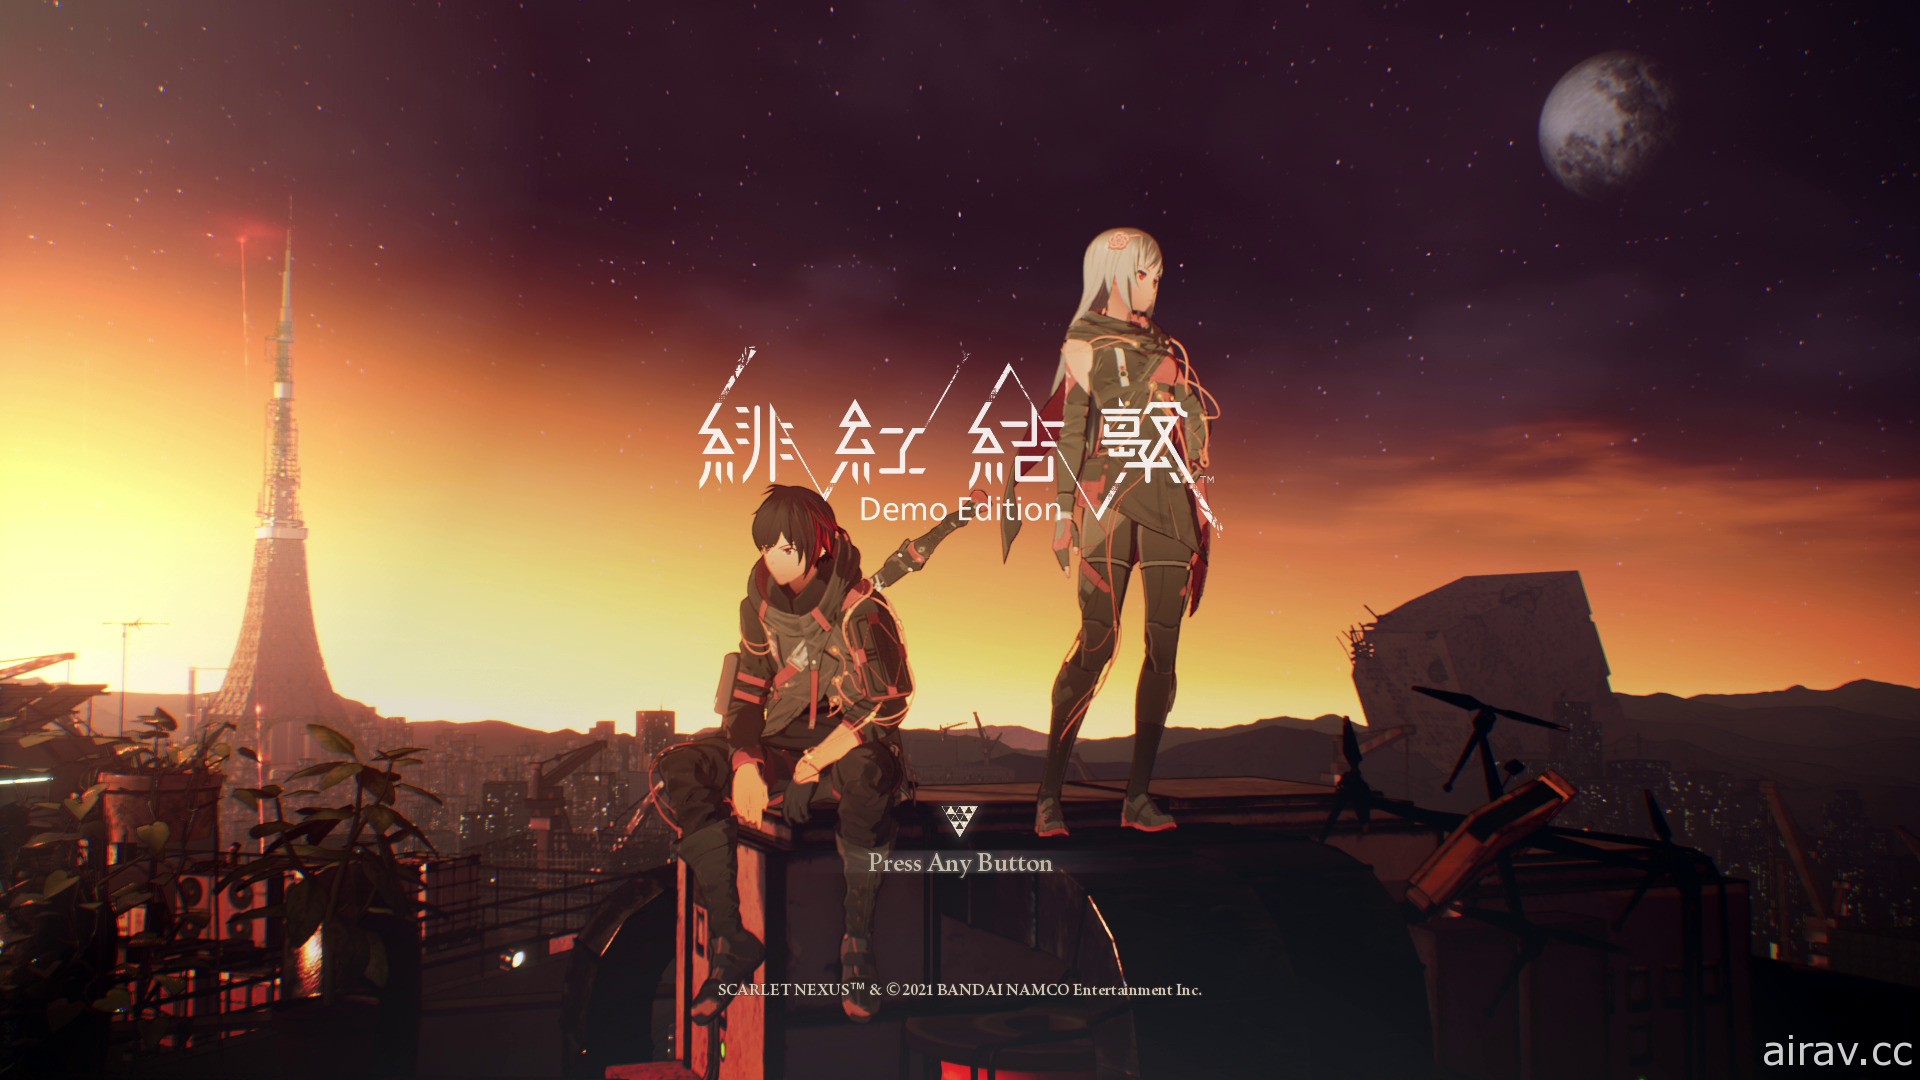 《绯红结系》繁中体验版 5 月 21 日发布 公开最新情报及双主角声优宣传影片